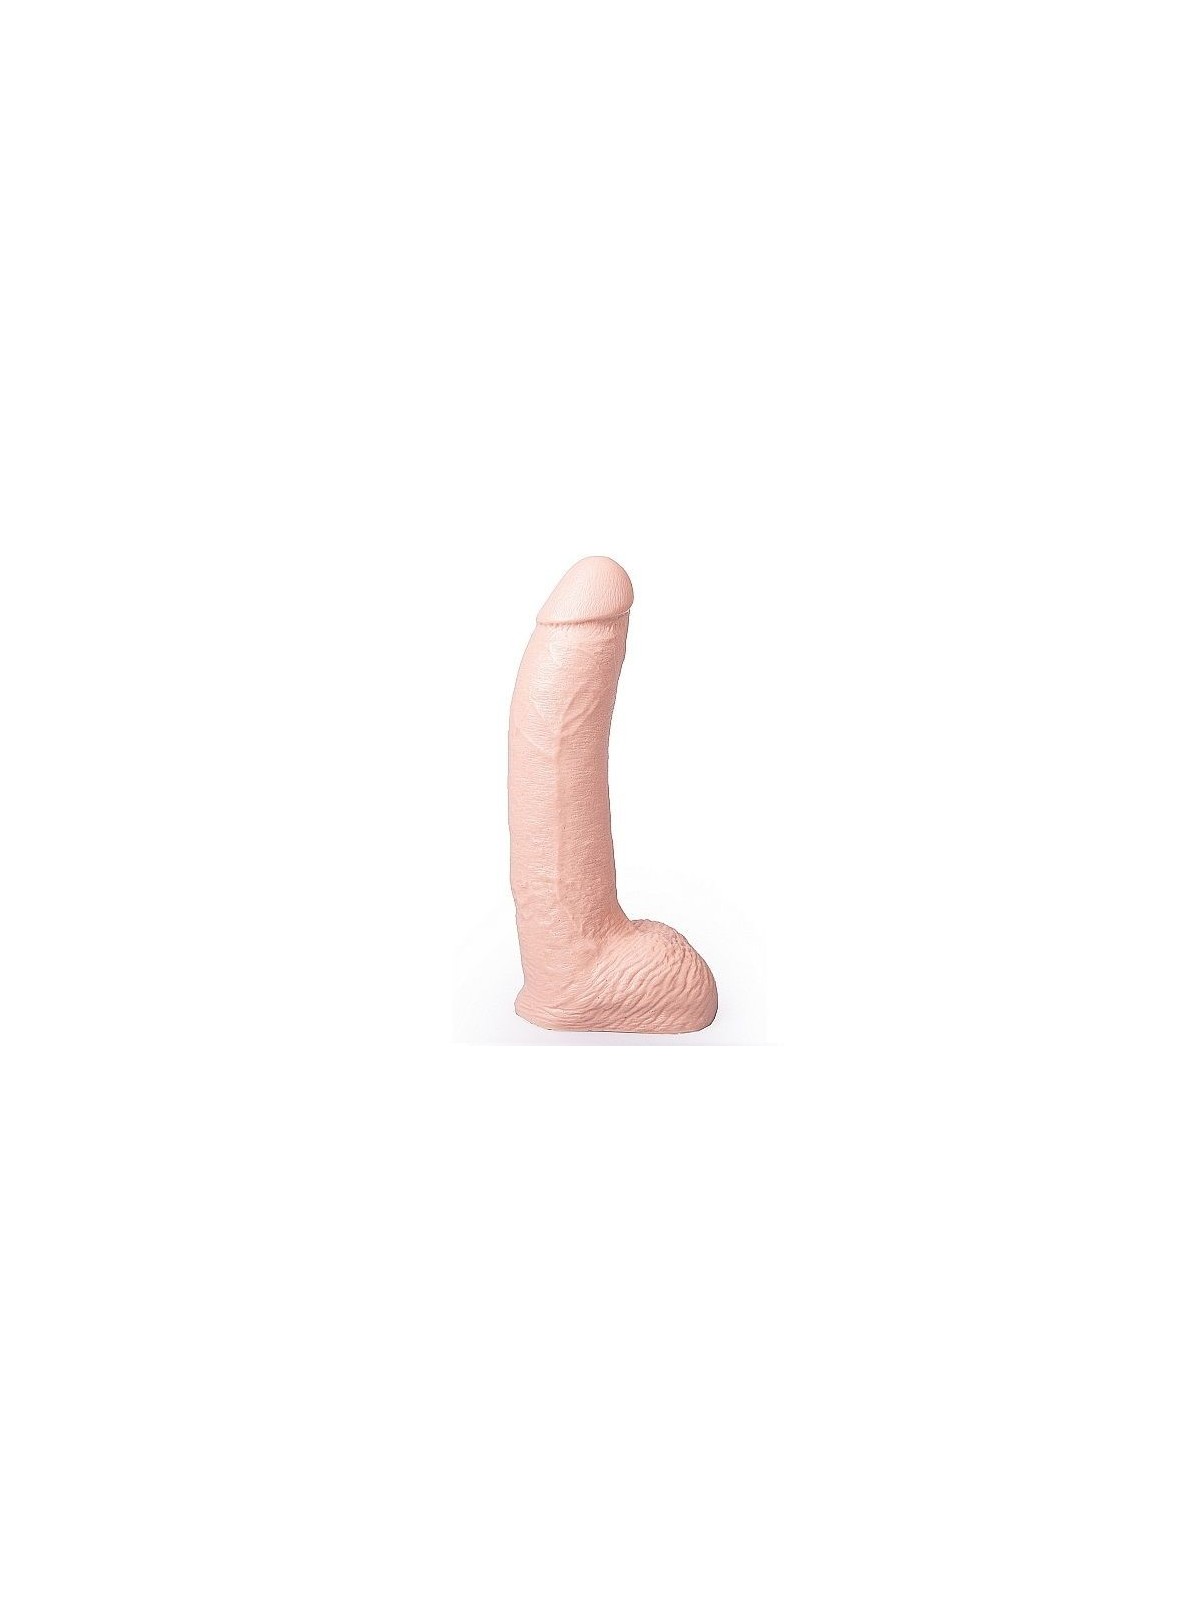 George Pene Realístico PVC 22 cm - Comprar Dildo gigante Hung System - Penes realistas (1)